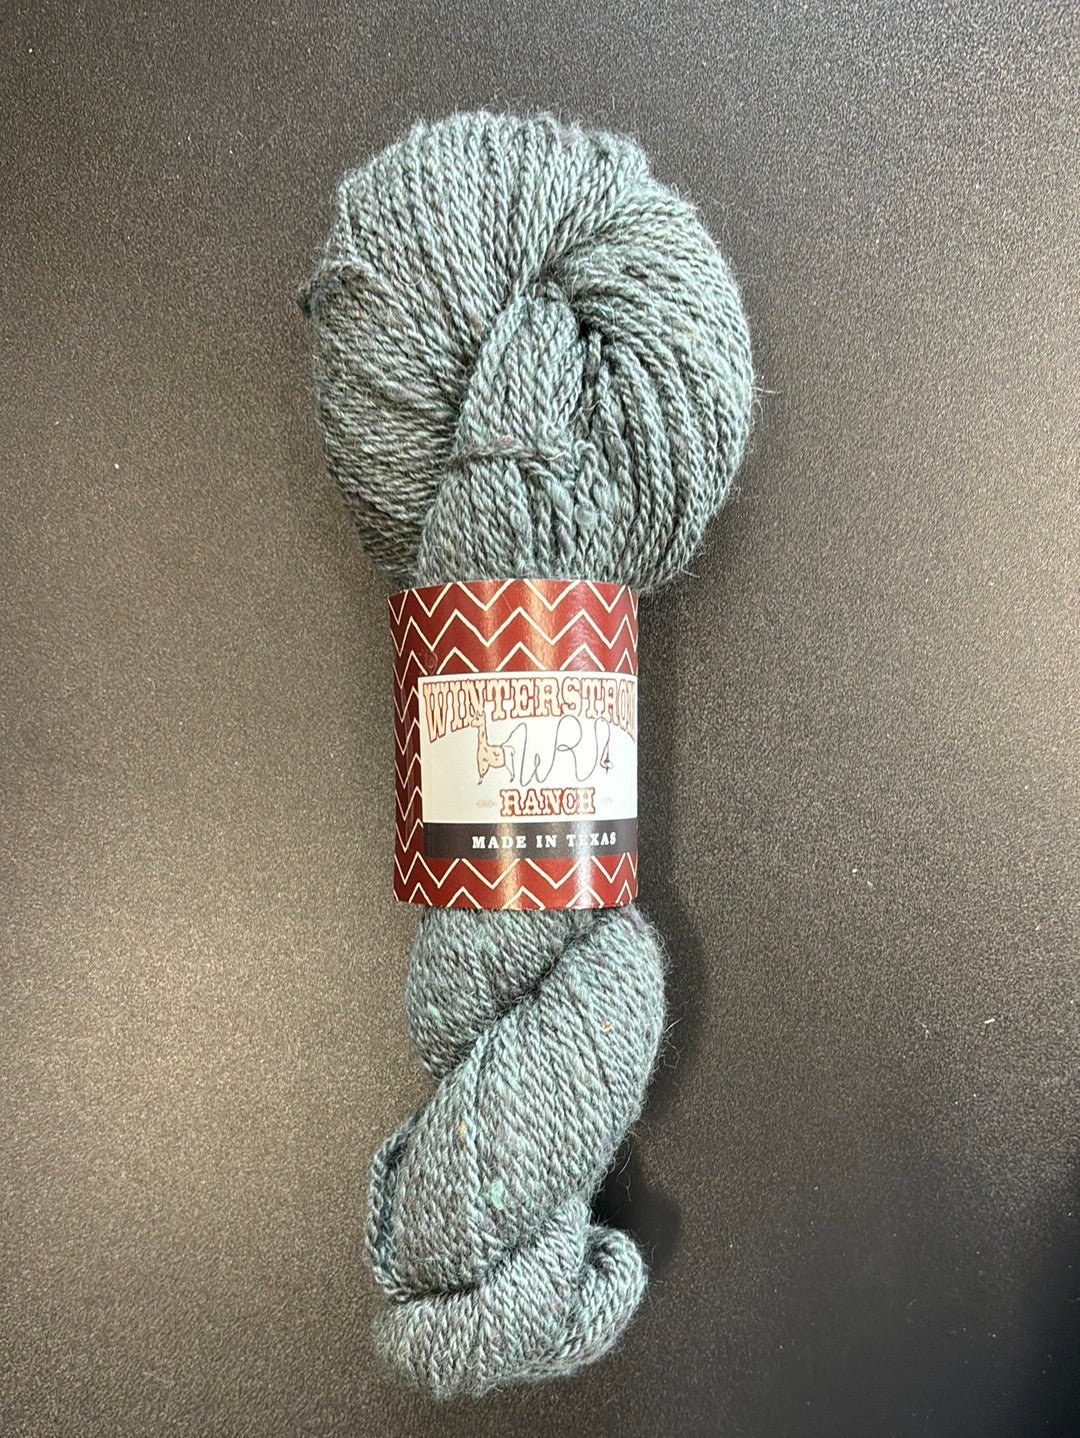 Dark blue/ green yarn